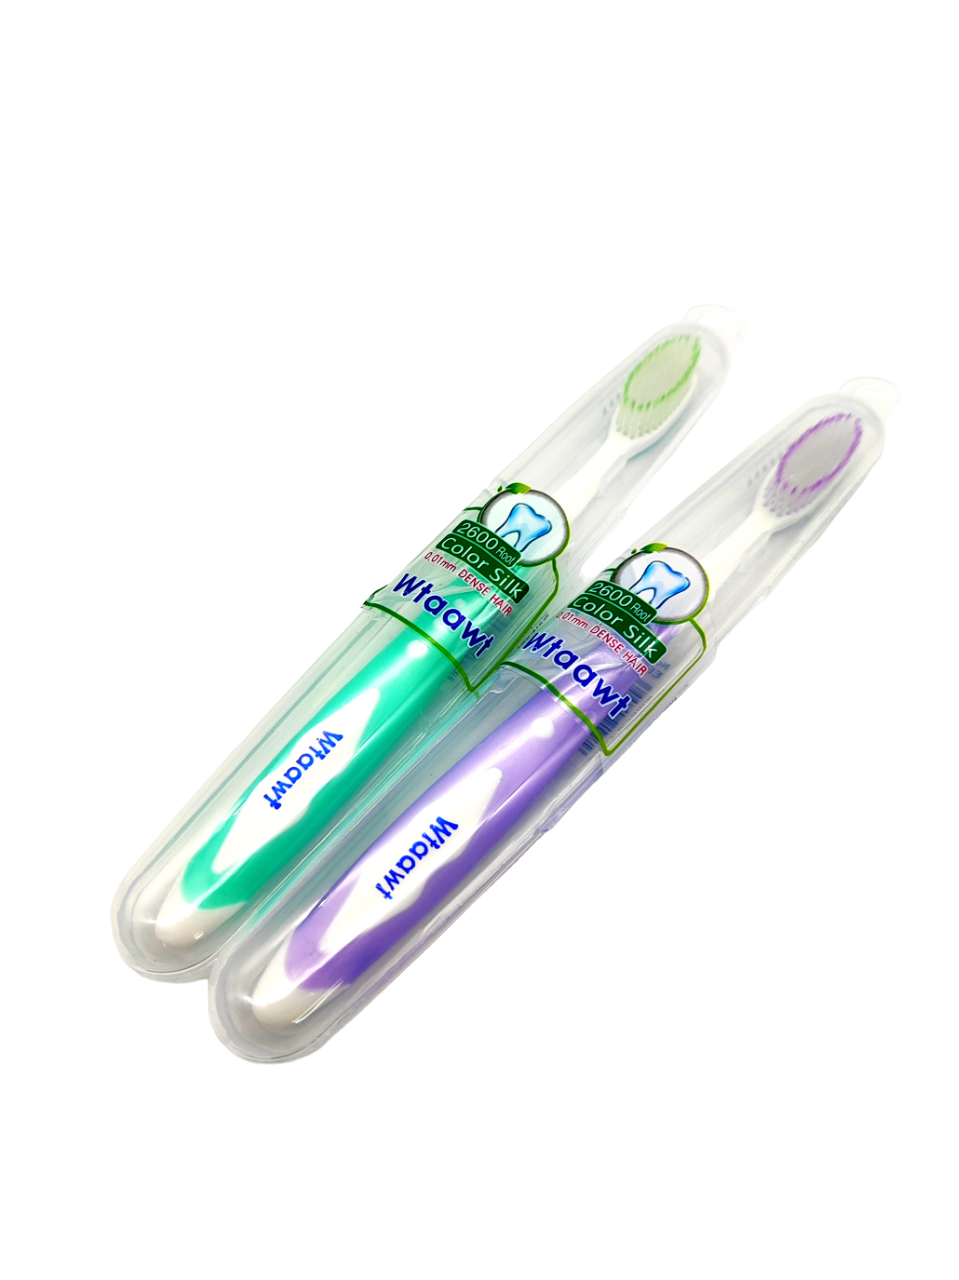 Комплект зубных щеток Wtaawt в футляре Цвет зеленый-фиолетовый 2 шт. ресторан